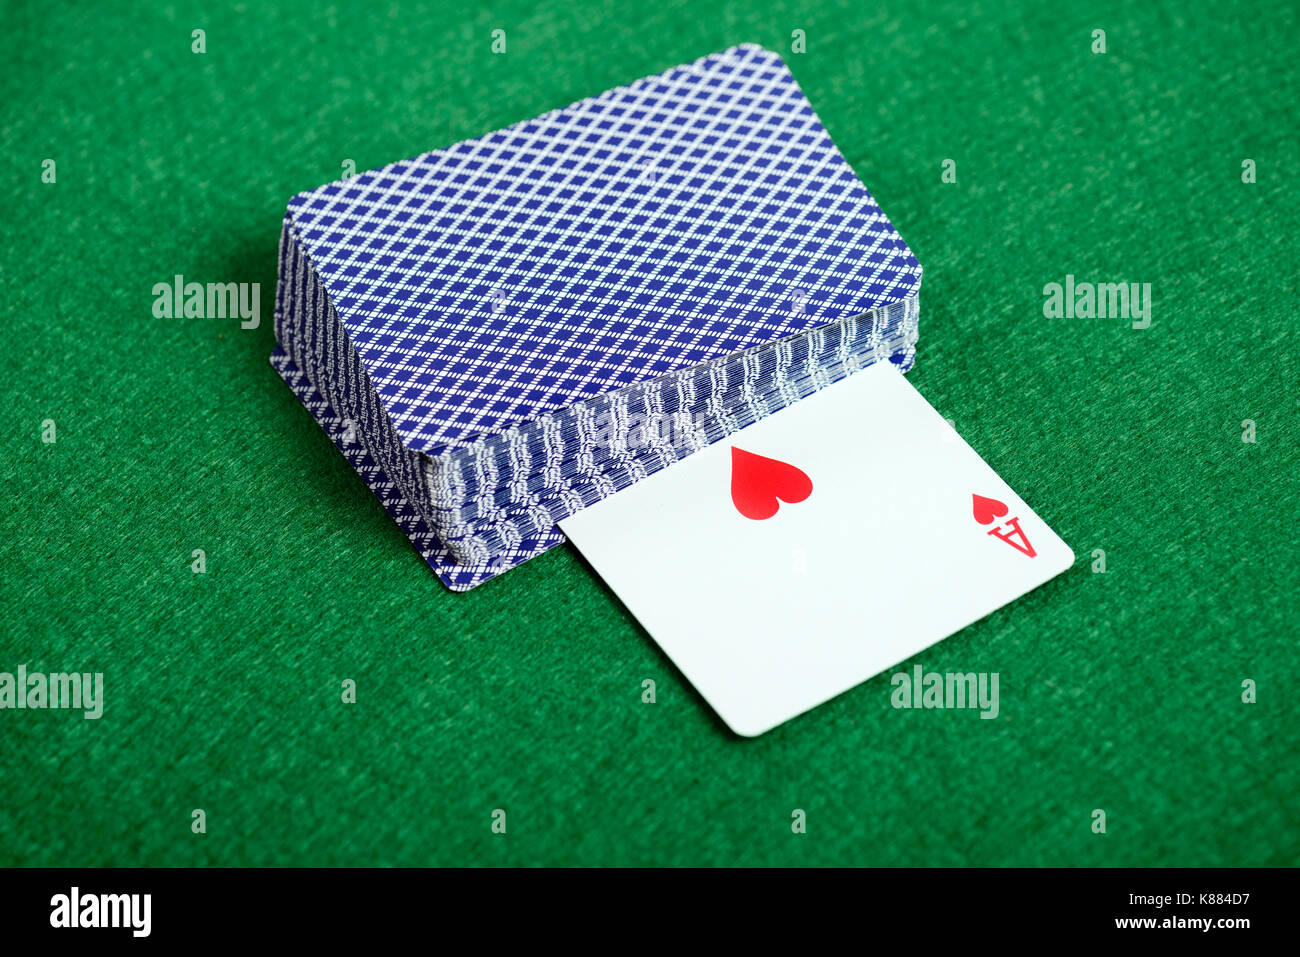 Le jeu des cartes à jouer avec Ace of Hearts sur fond vert 24 casino Banque D'Images